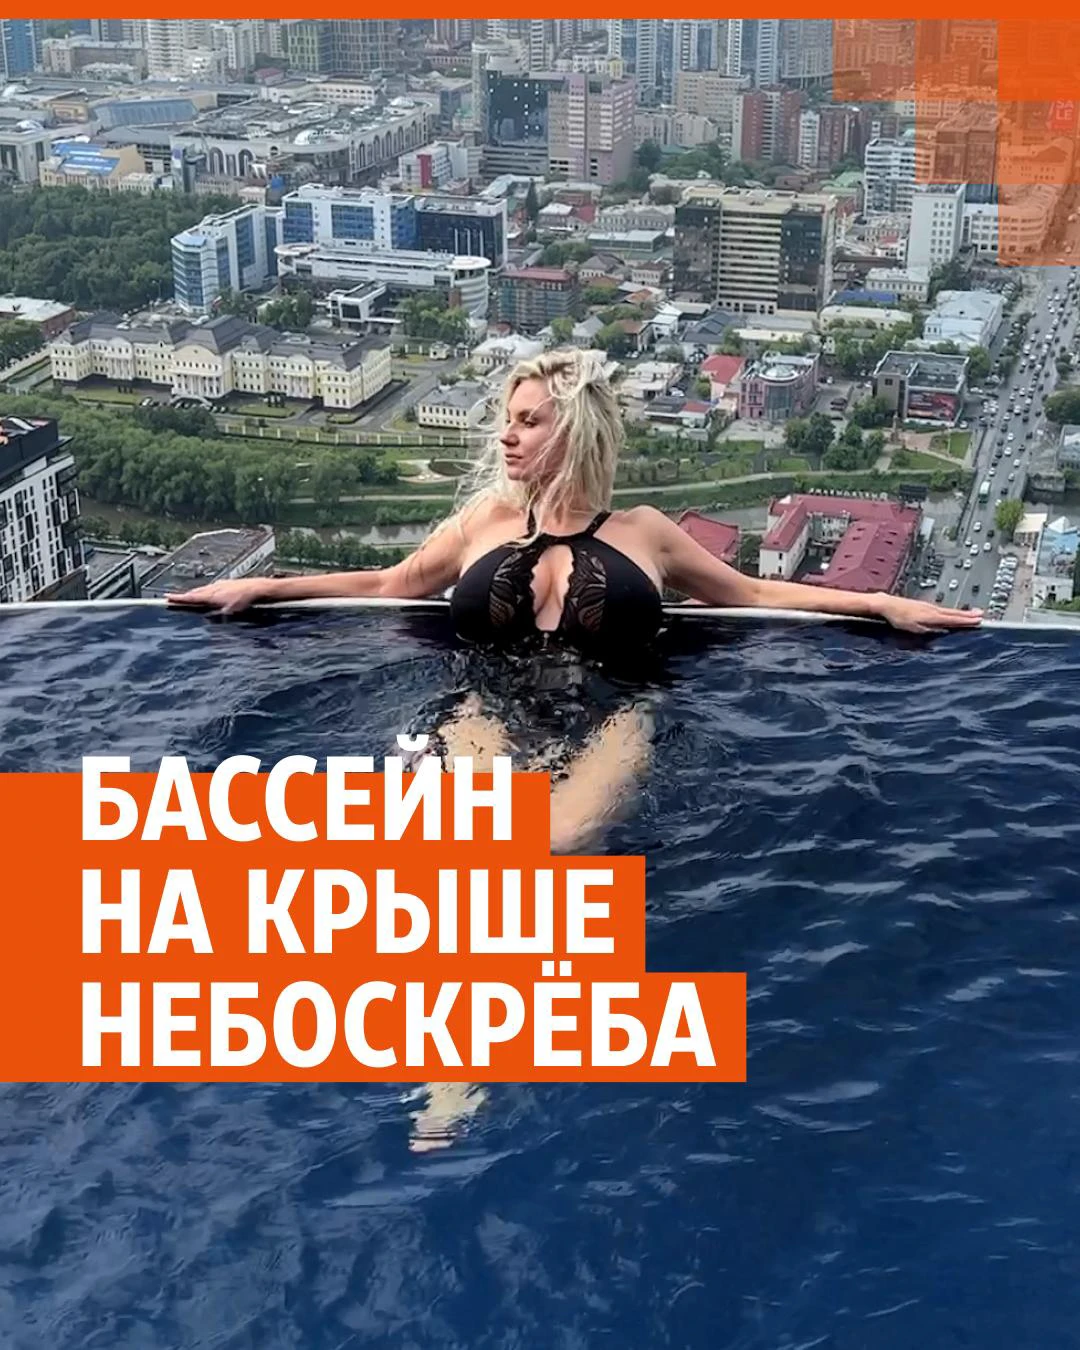 На грани: красотки публикуют в Инстаграме фото в новой позе у края бассейна » altaifish.ru